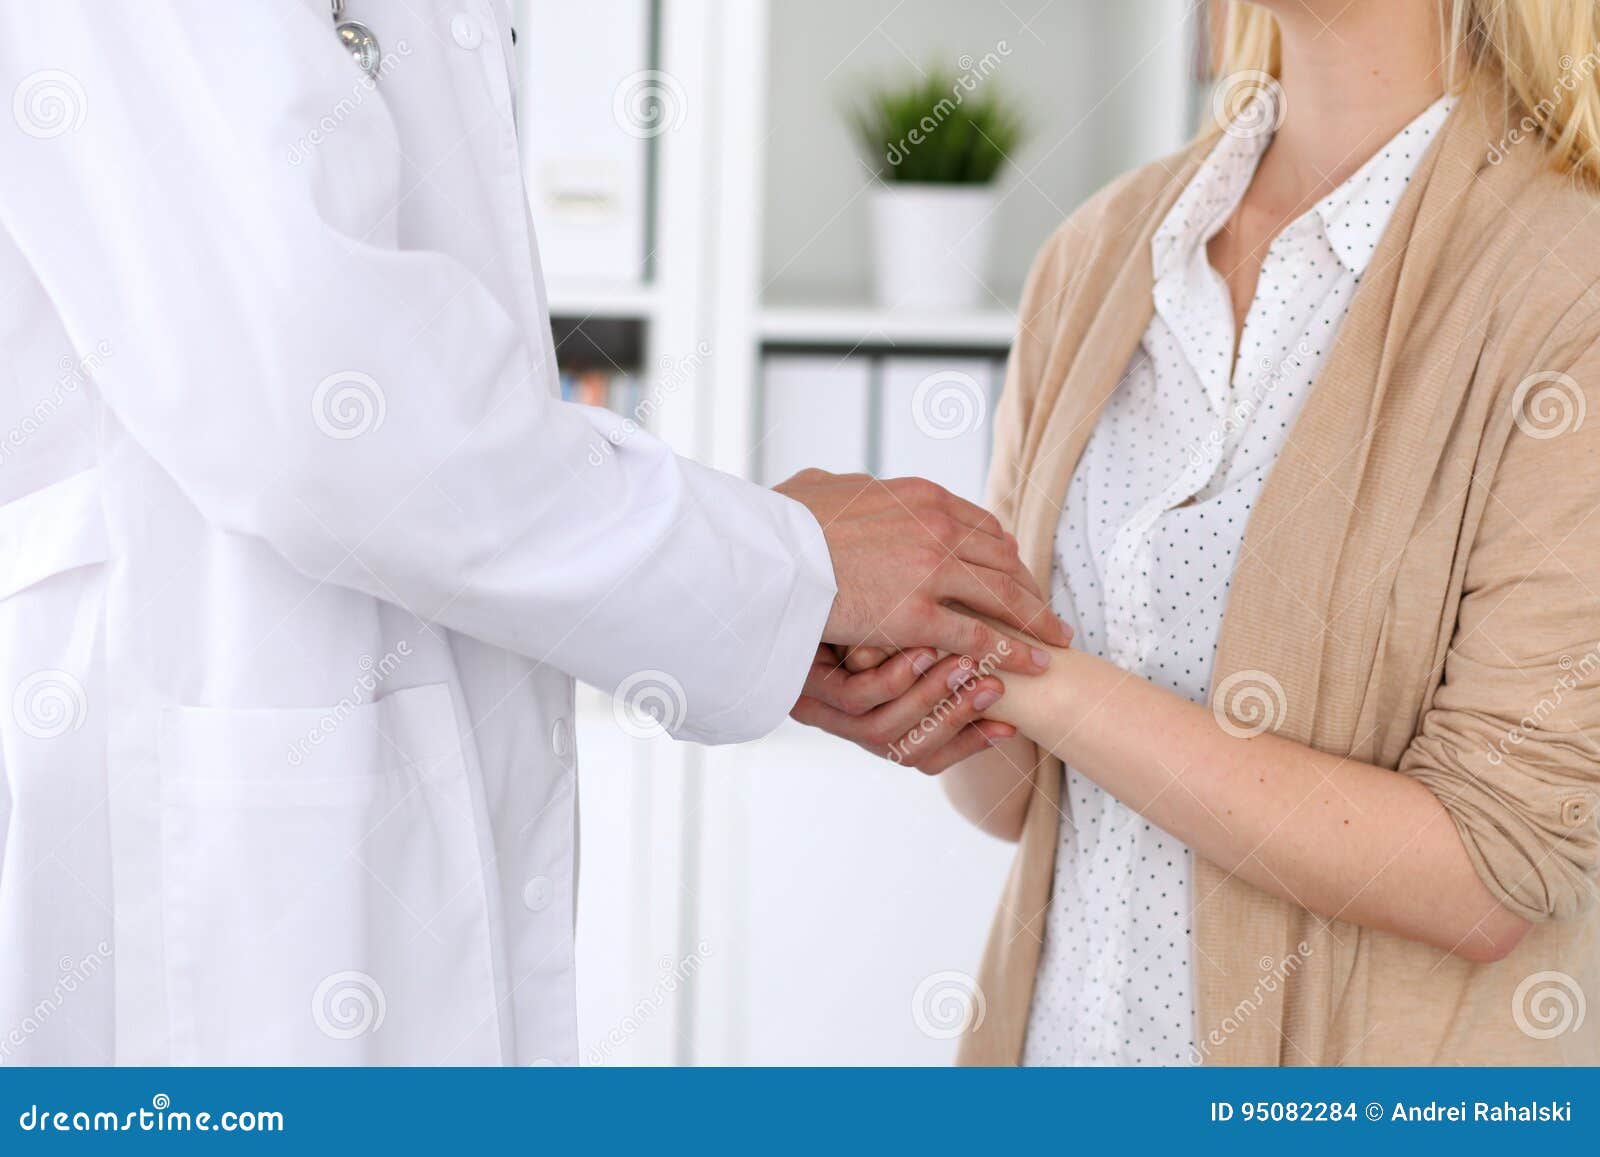 Доверие пациента. Доверие к врачу. Руки врача и пациента. Доктор внушающий доверие.